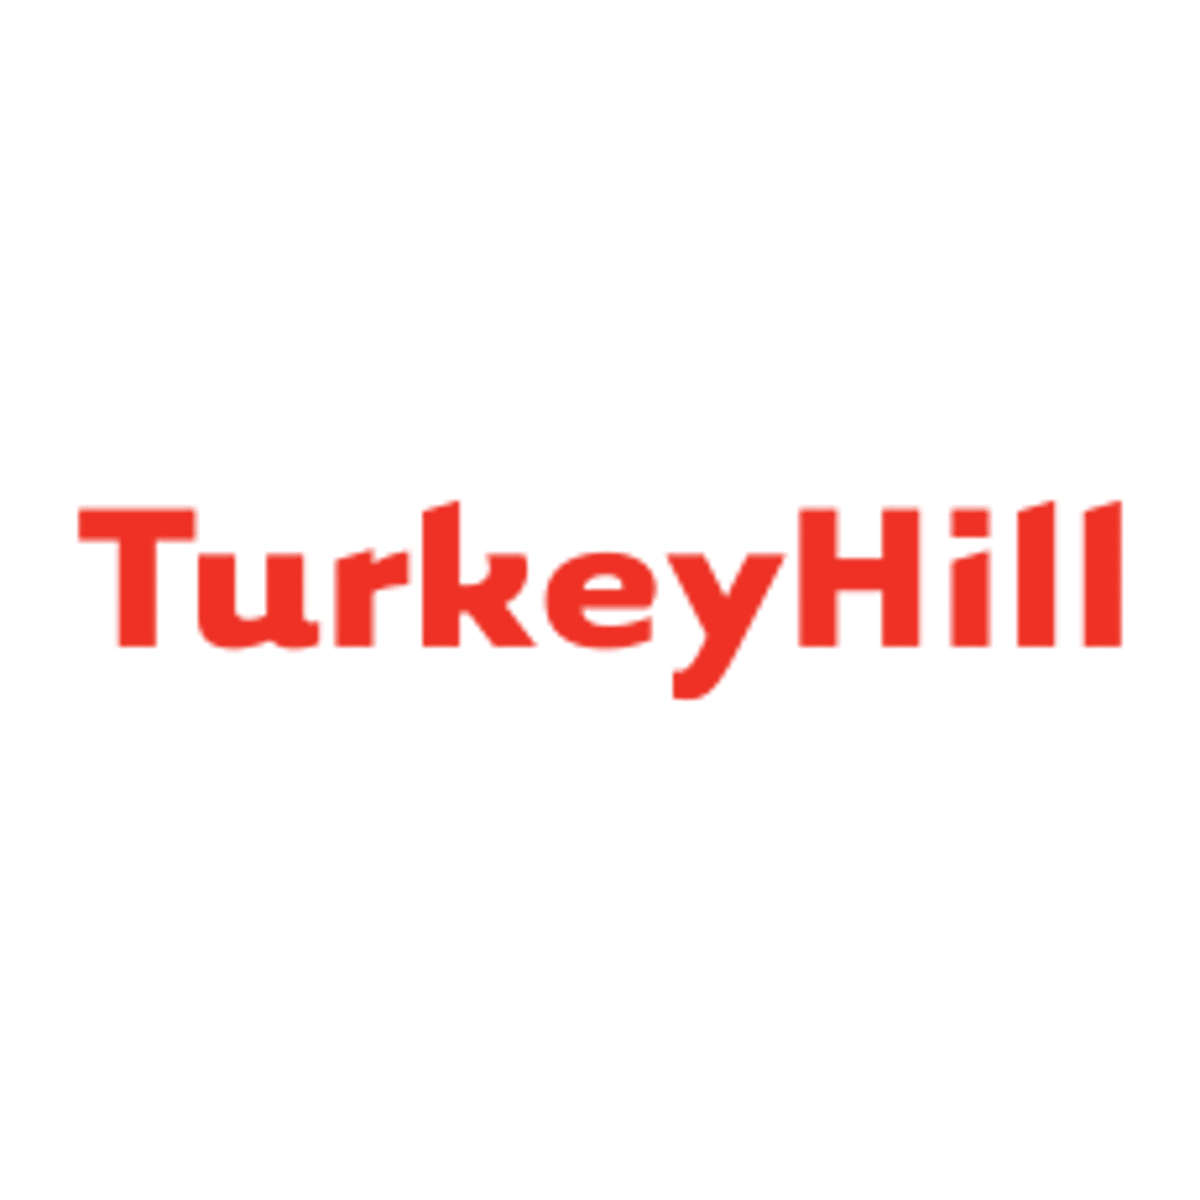 Turkey Hill Midwest